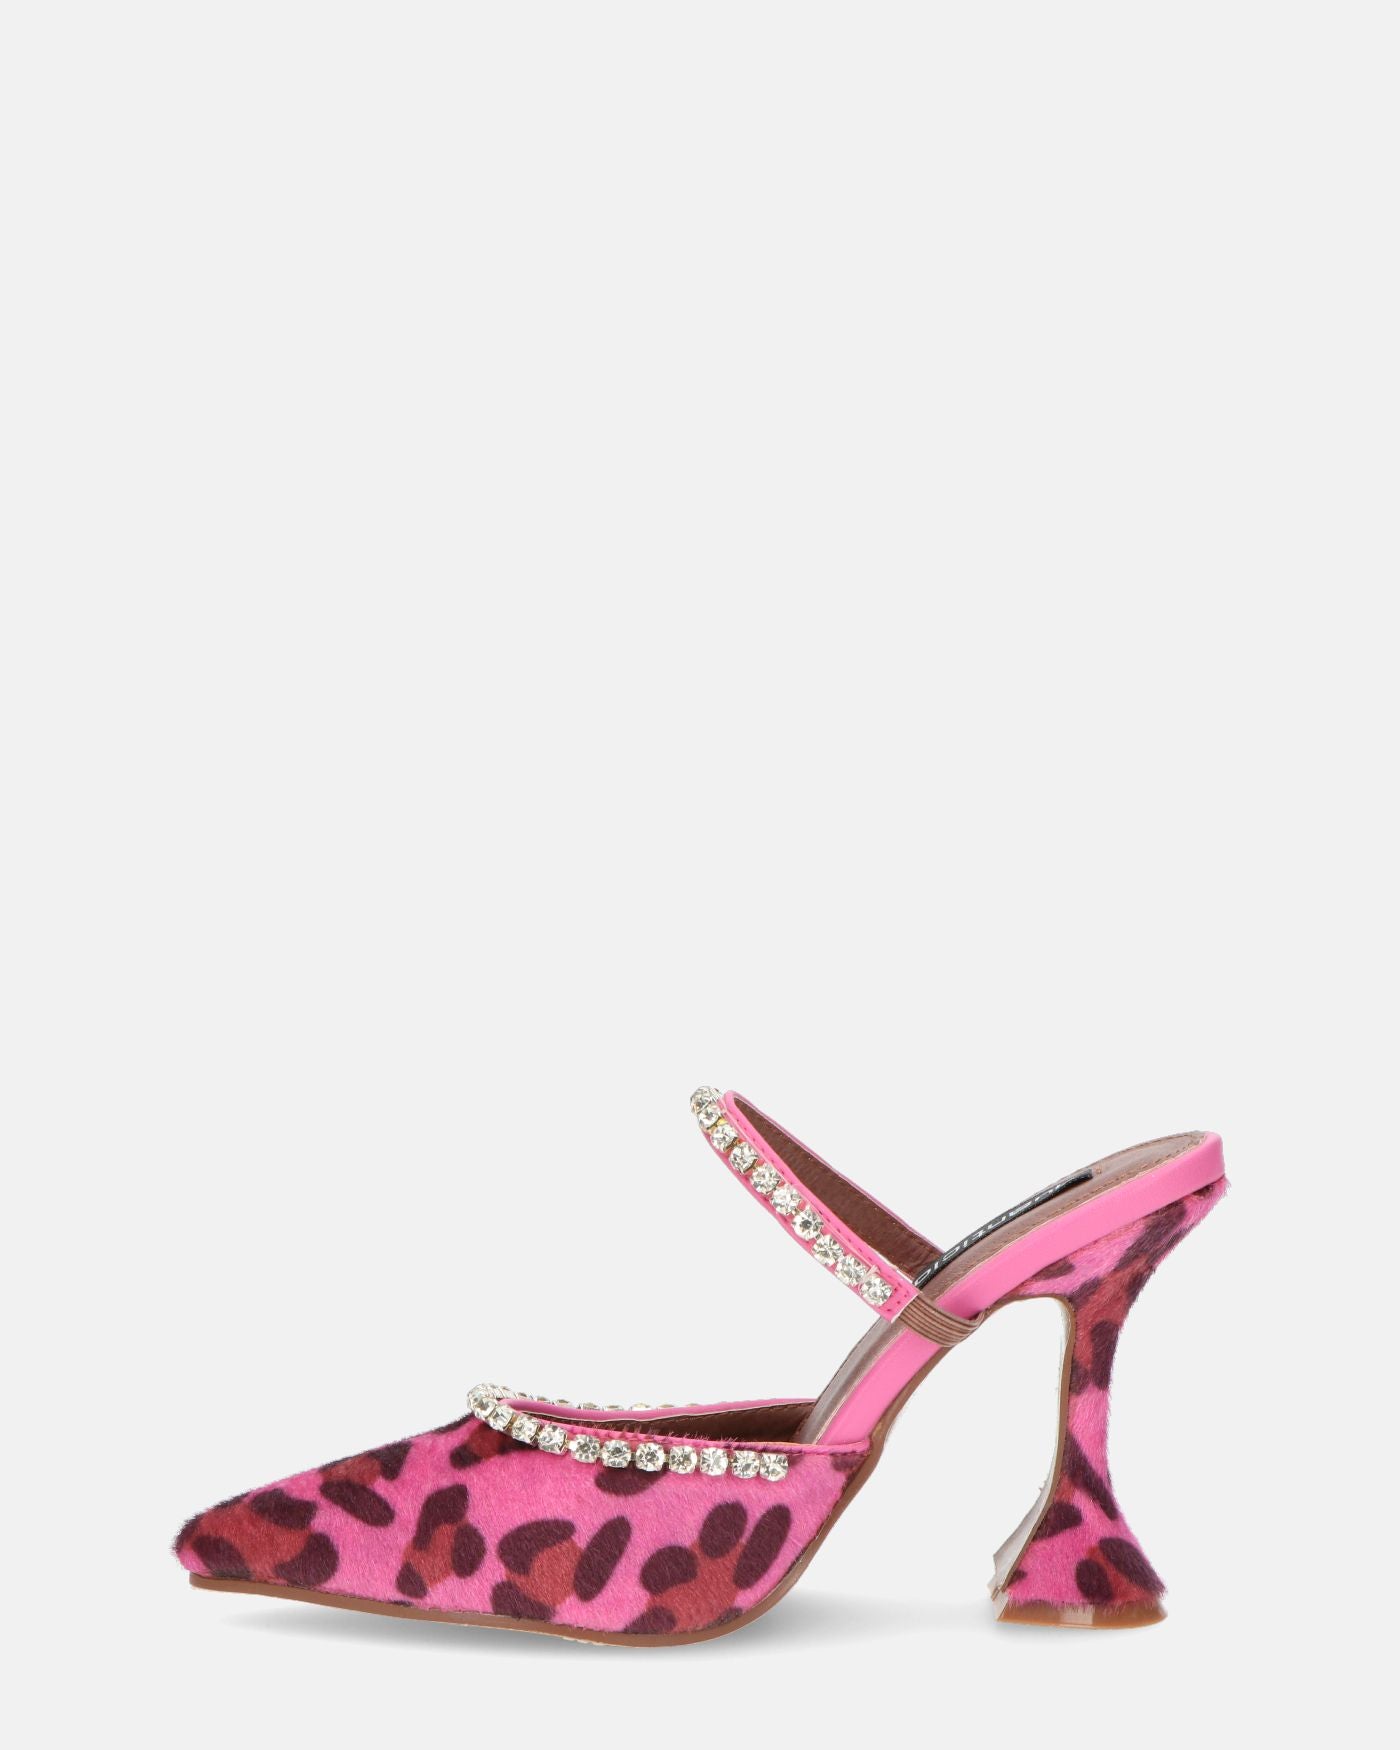 PERAL - chaussure à talon léopard rose avec pierres précieuses